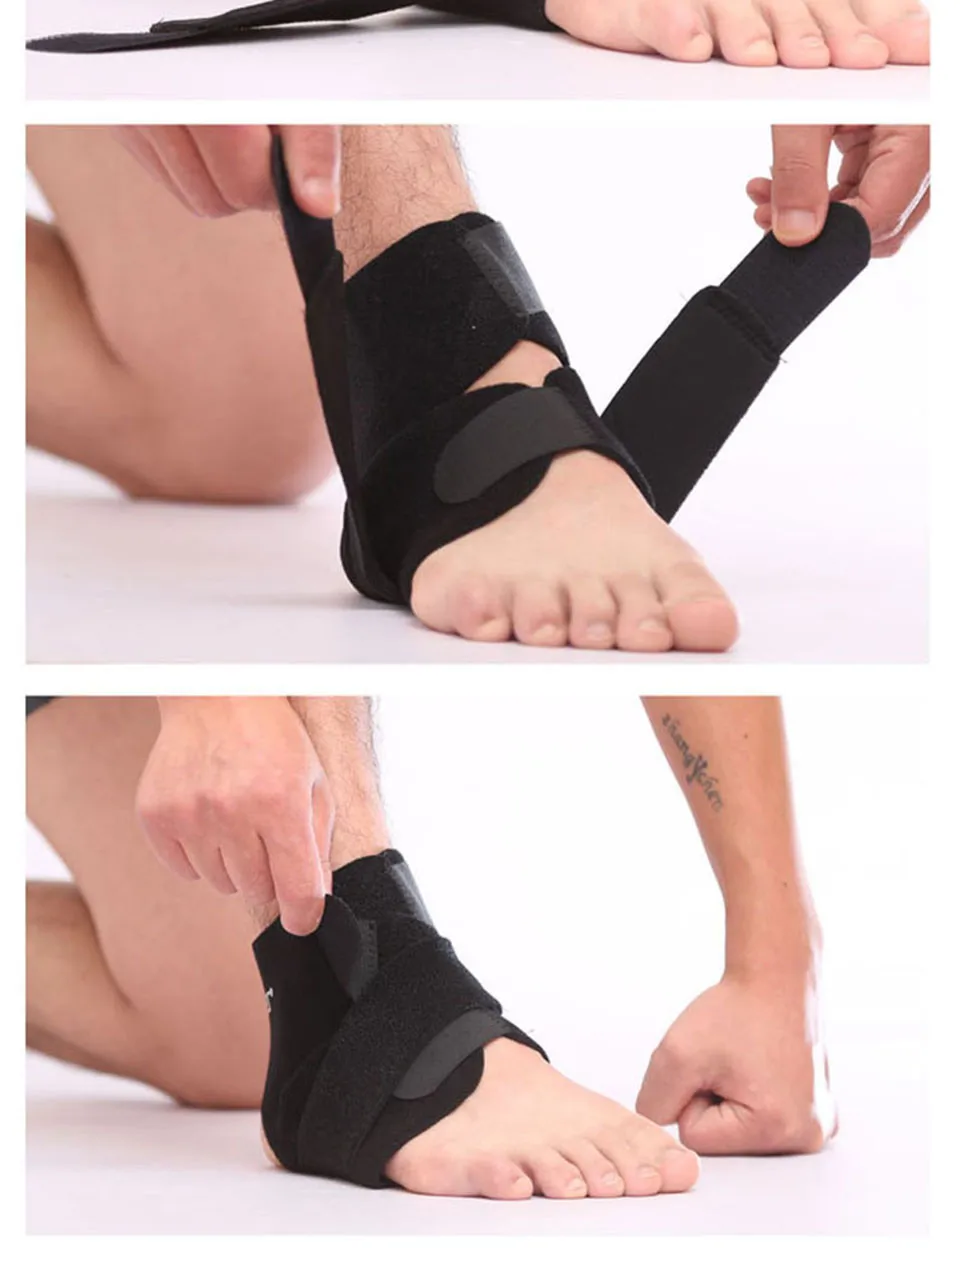 AOLIKES, 1 шт., спортивная защита от боли в лодыжке, регулируемая защита лодыжки, ремень для поддержки лодыжки